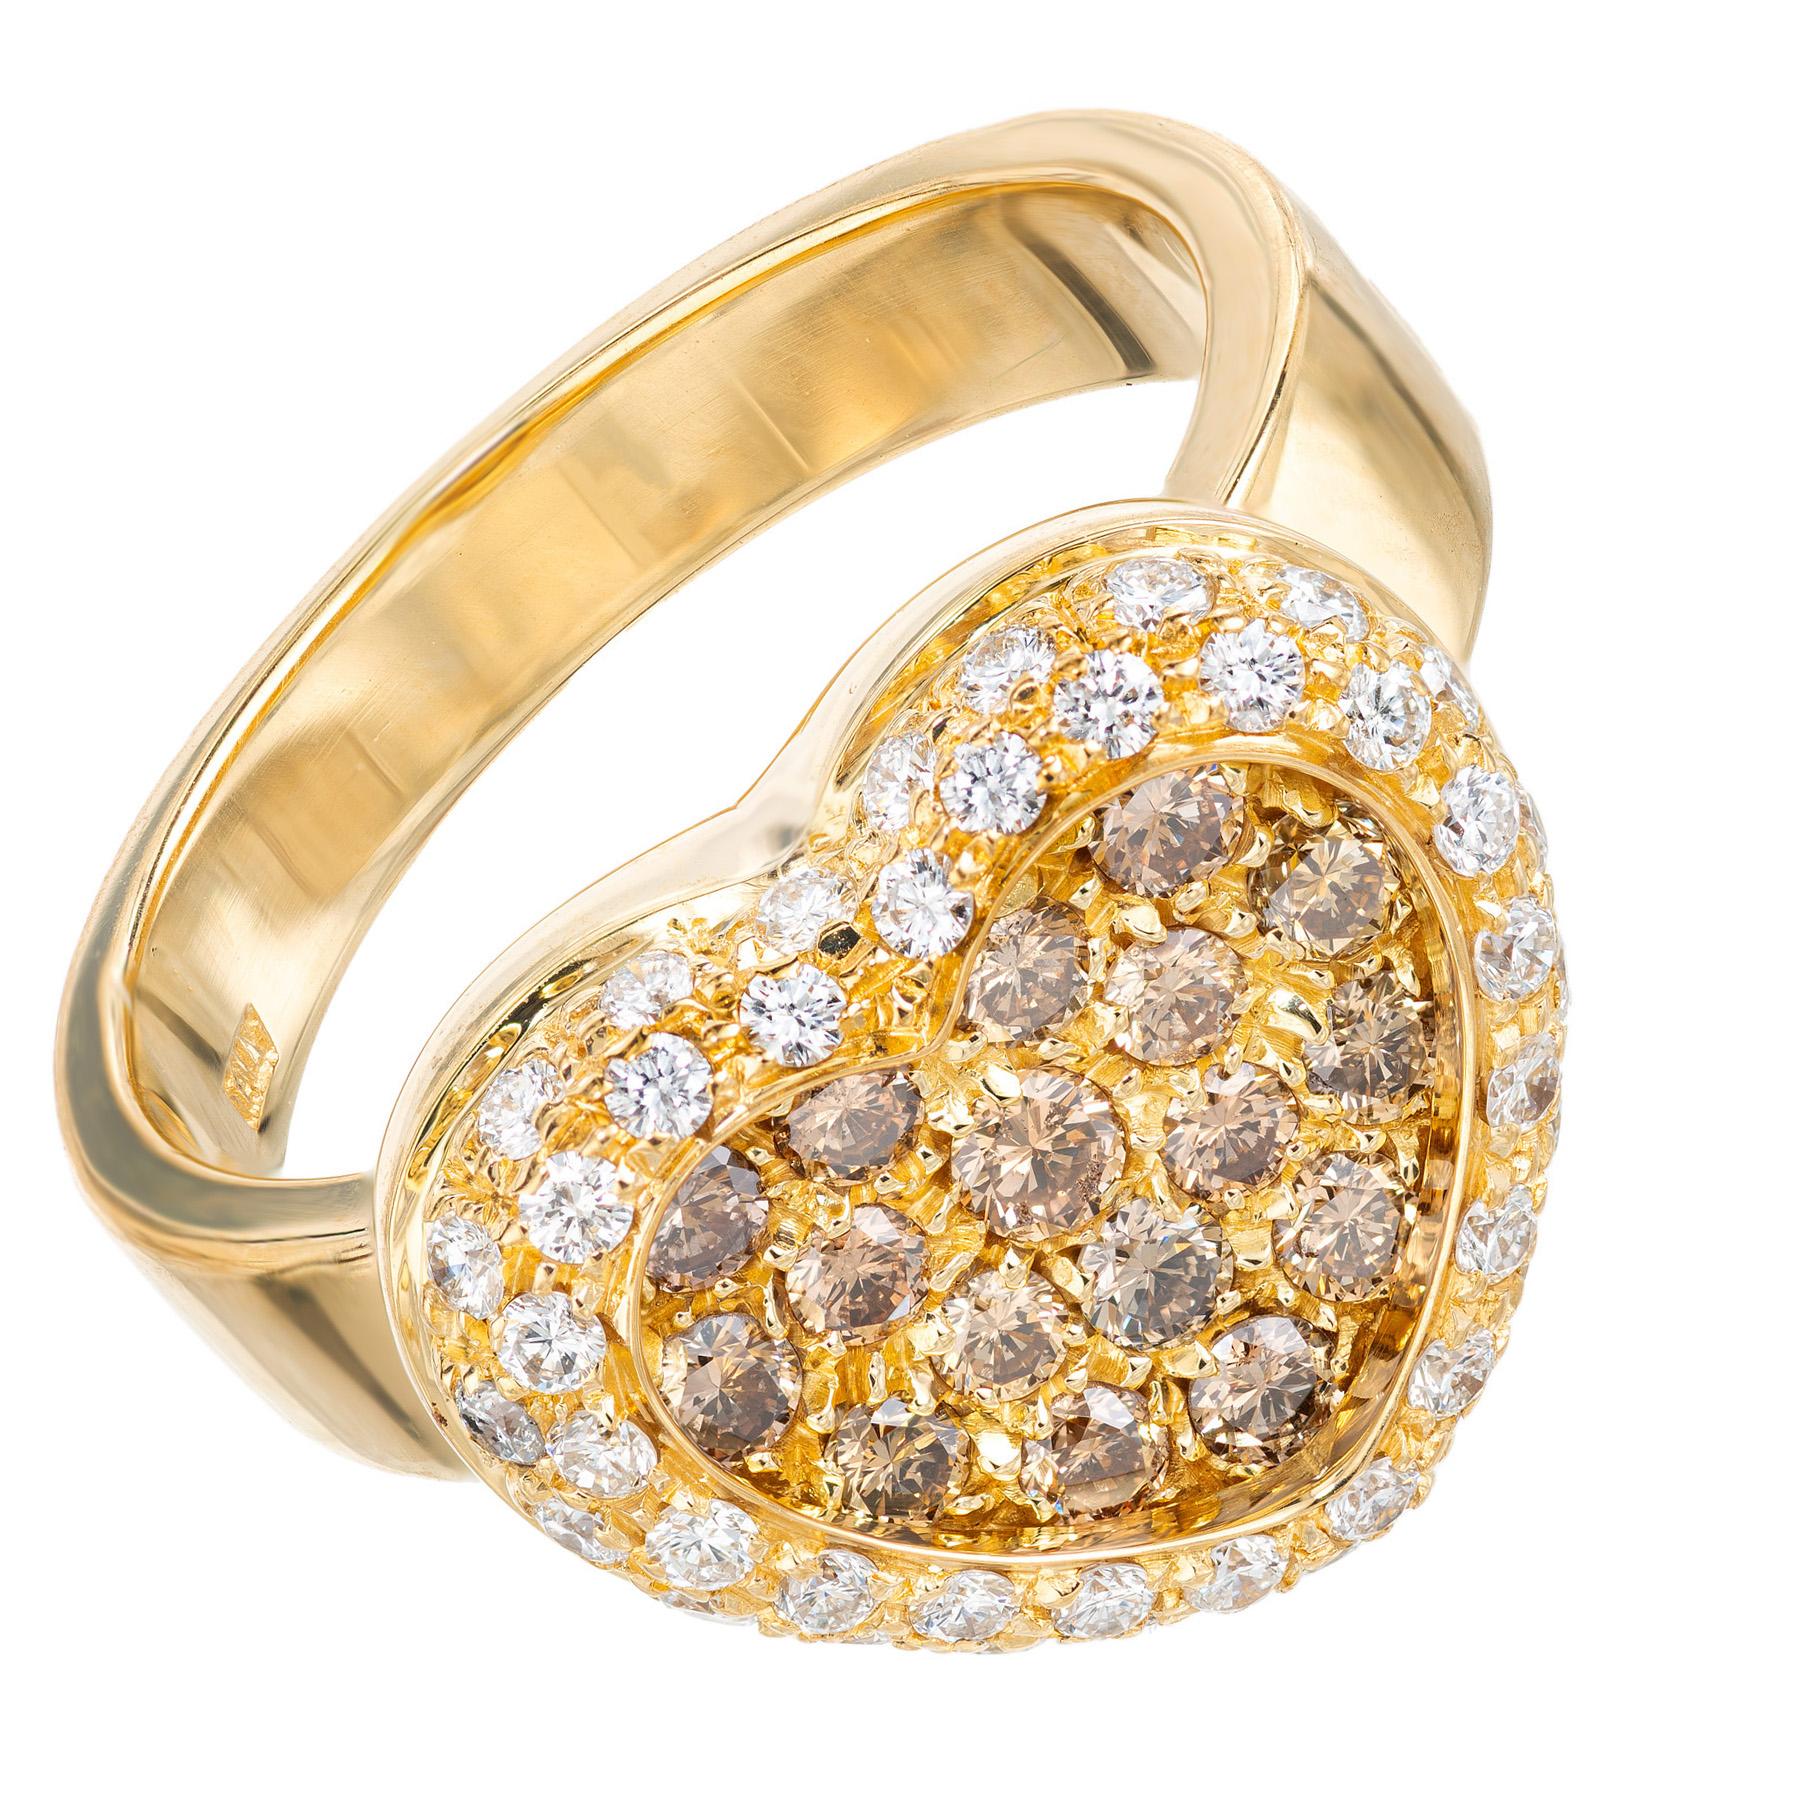 Schöner, gut gearbeiteter Diamant-Herzring aus 18 Karat Gelbgold mit 17 runden braunen Cognac-Diamanten, die von einem Halo aus 42 runden weißen Diamanten mit Brillantschliff akzentuiert werden. Der Kontrast zwischen den verschiedenfarbigen